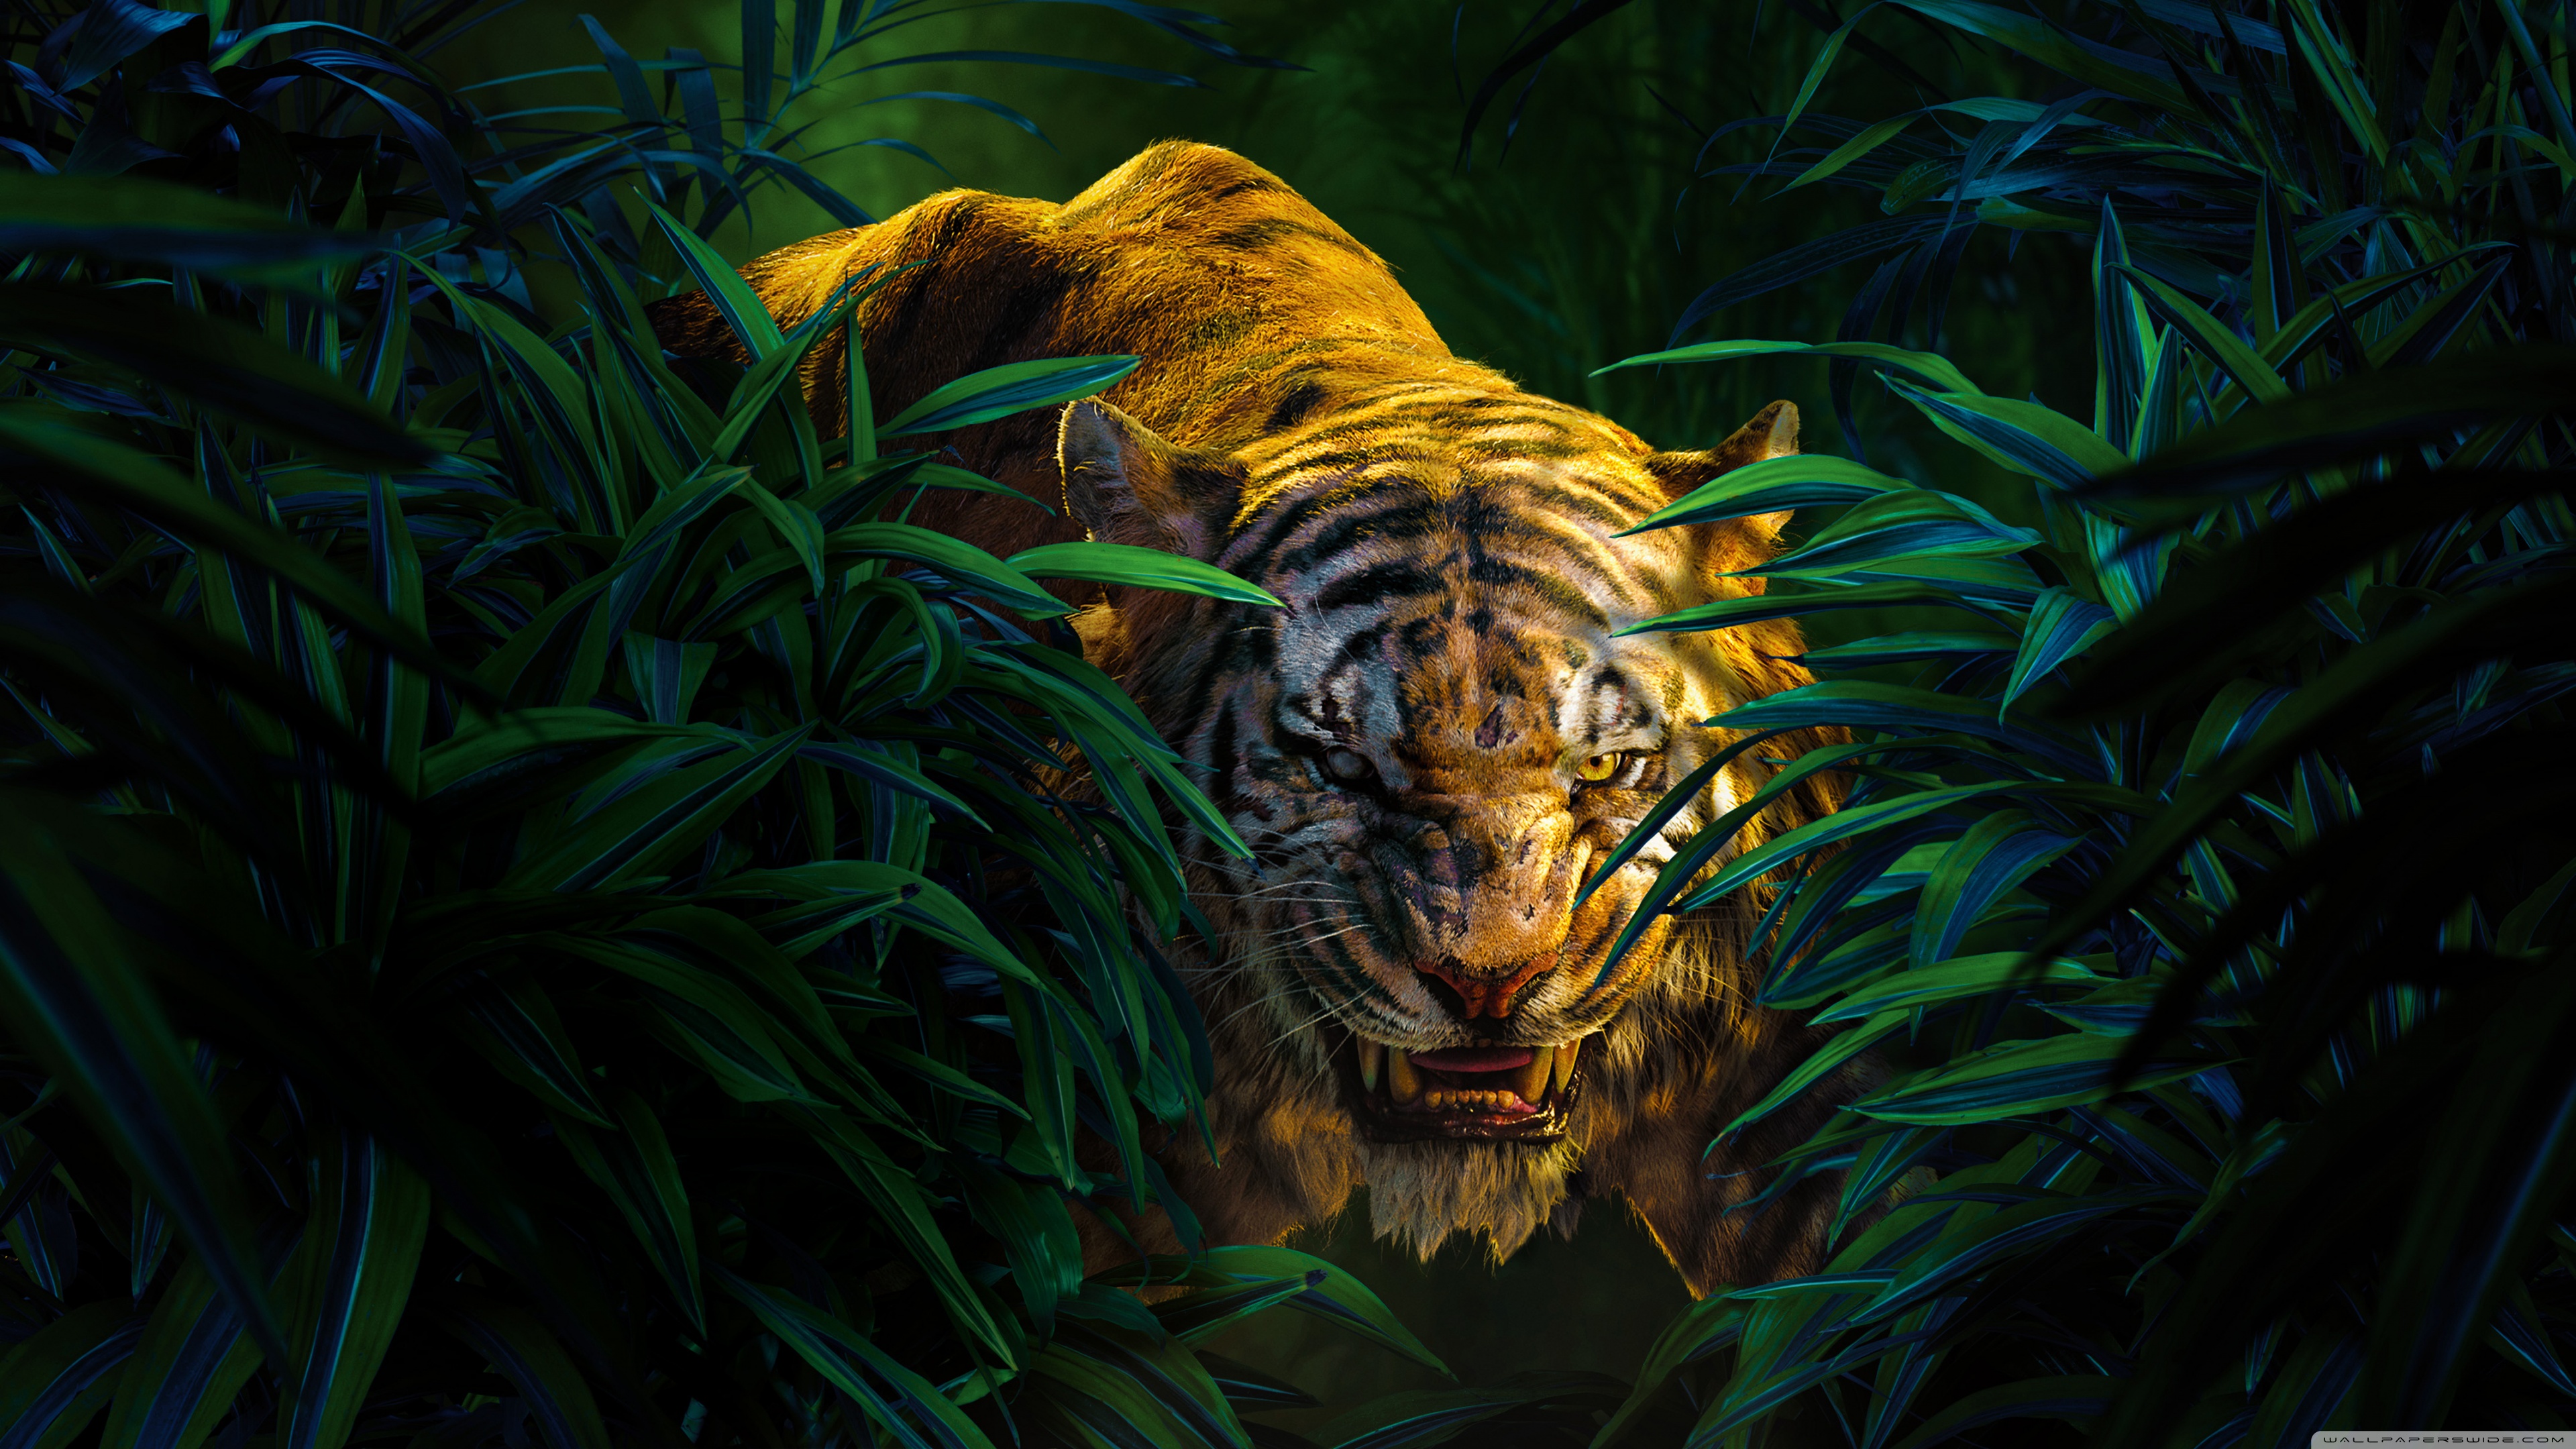 General 3840x2160 animals nature digital art mammals big cats plants The Jungle Book